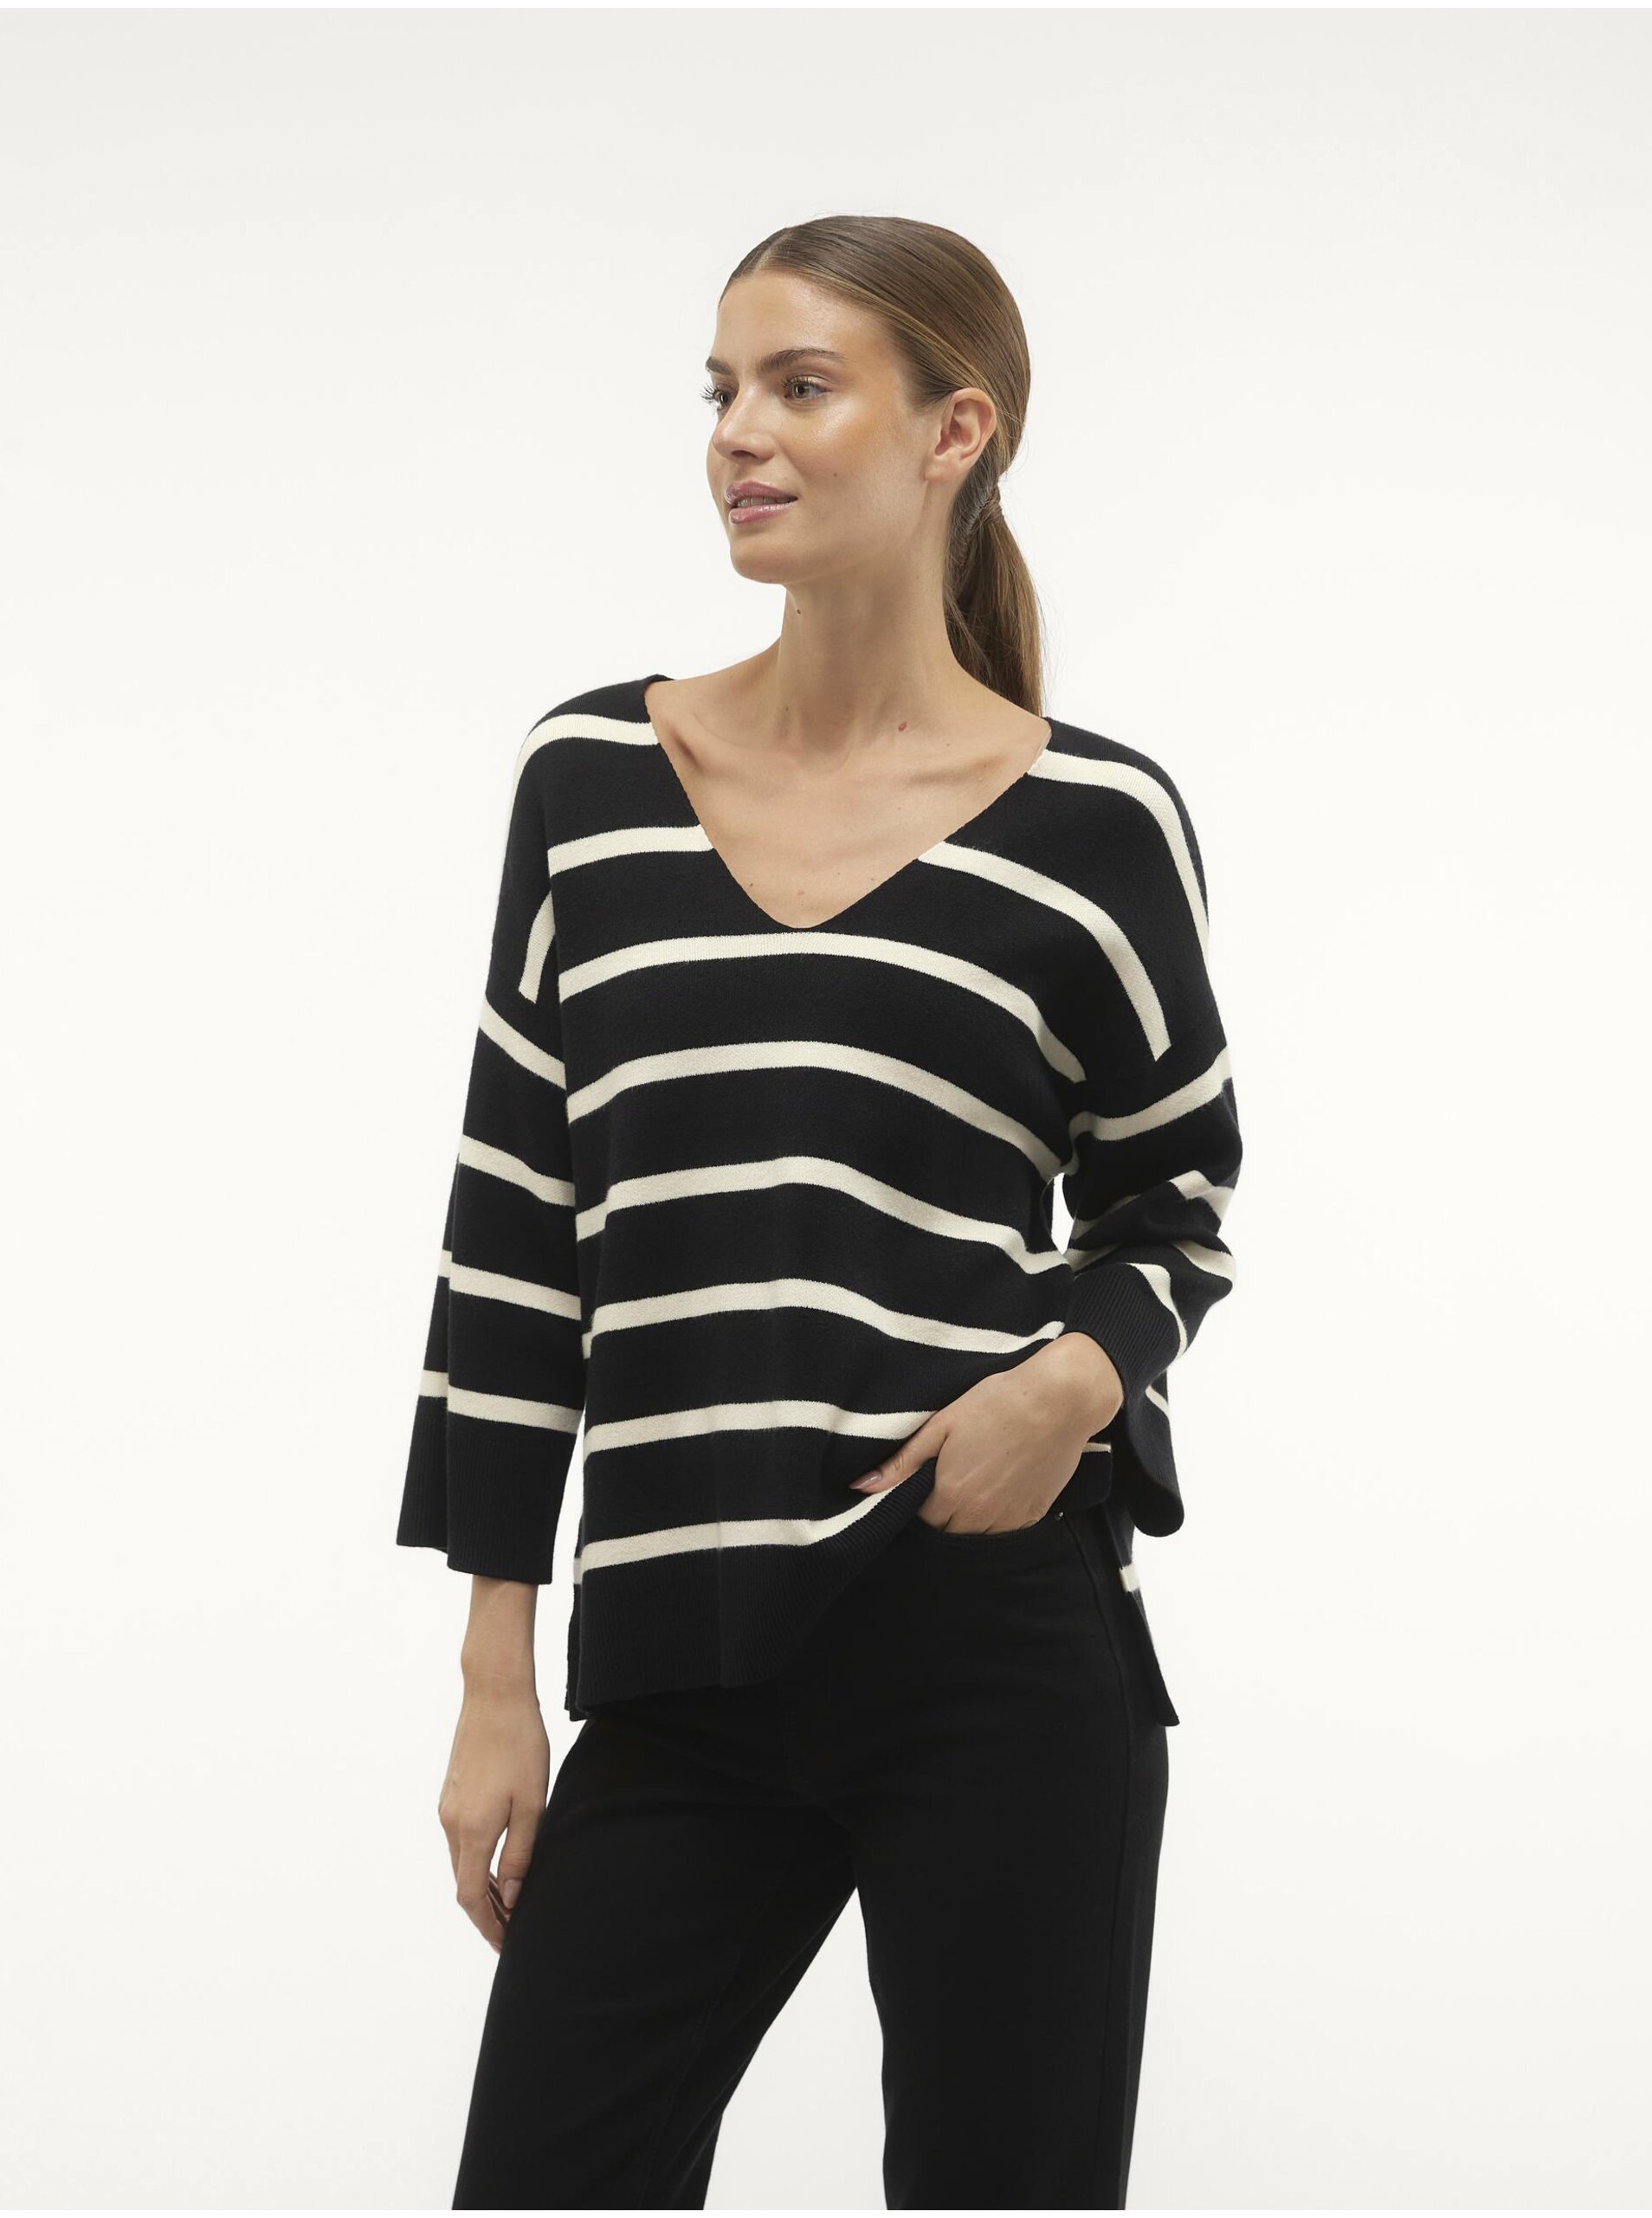 E-shop Černo-bílý dámský pruhovaný svetr Vero Moda Saba